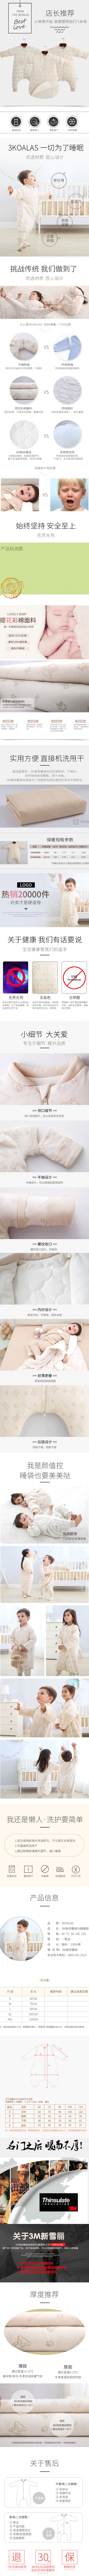 淘宝美工酱格子母婴用品宝宝睡袋详情页模板作品